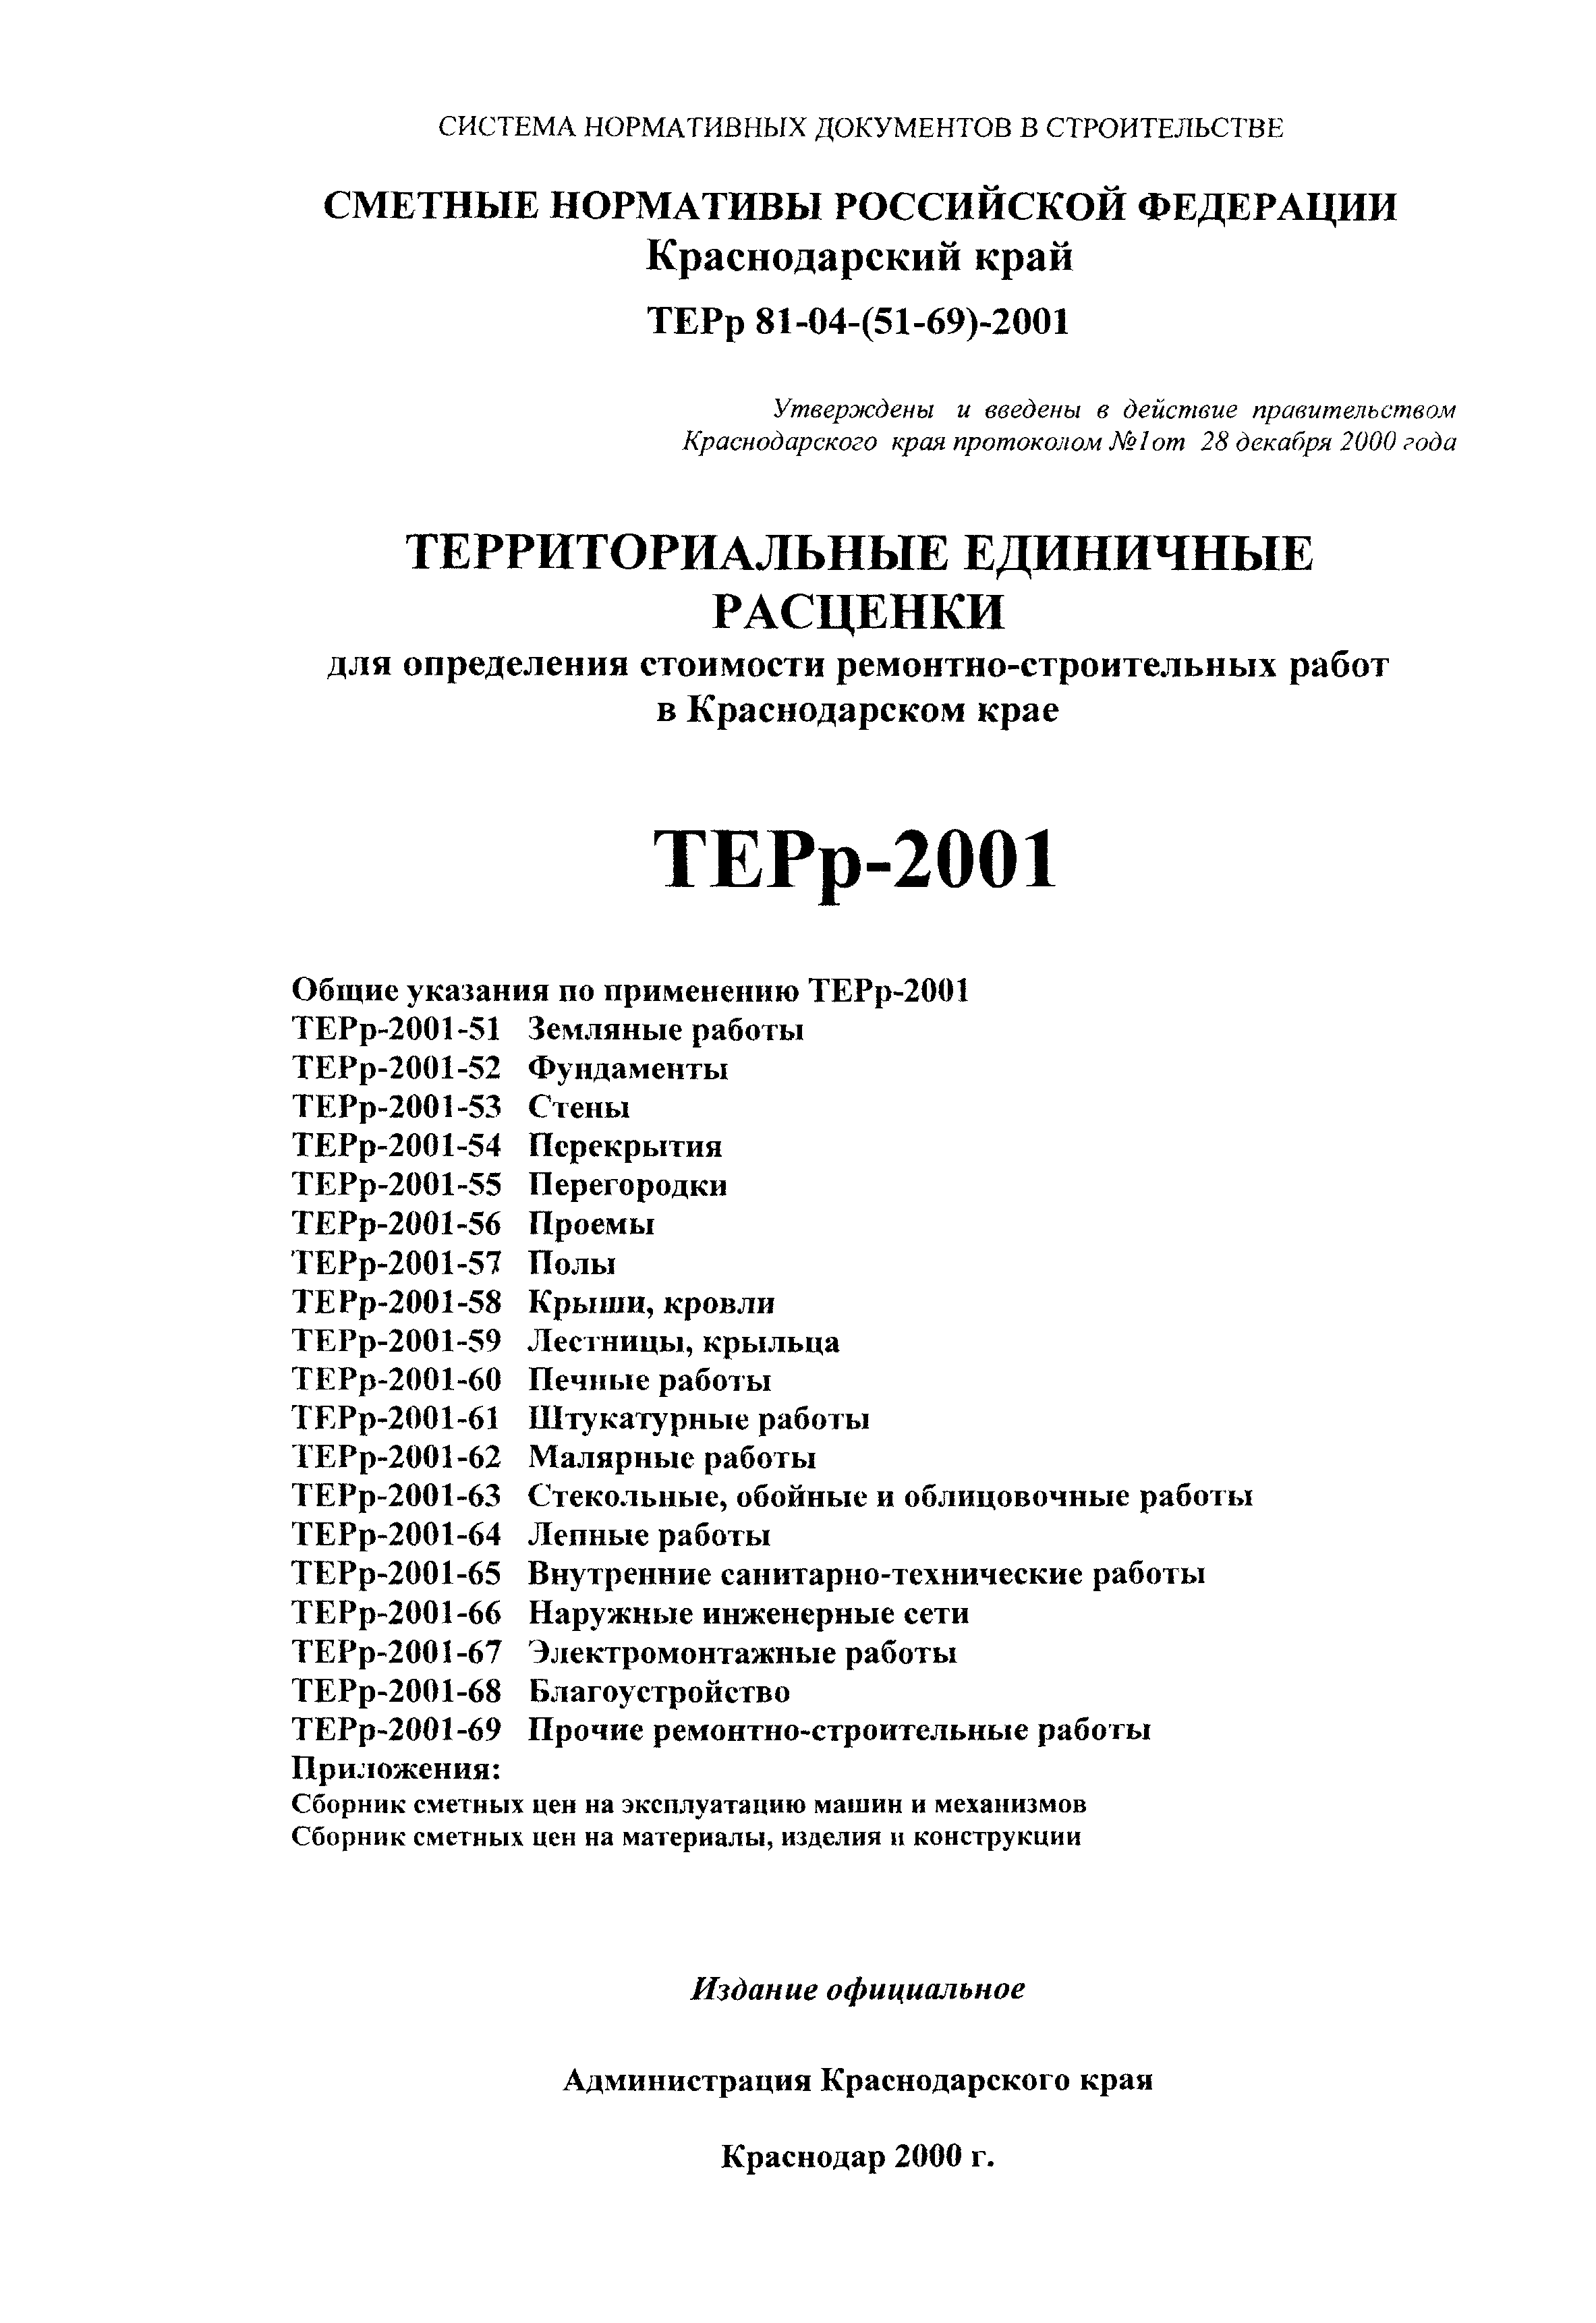 ТЕРр Краснодарского края 2001-64